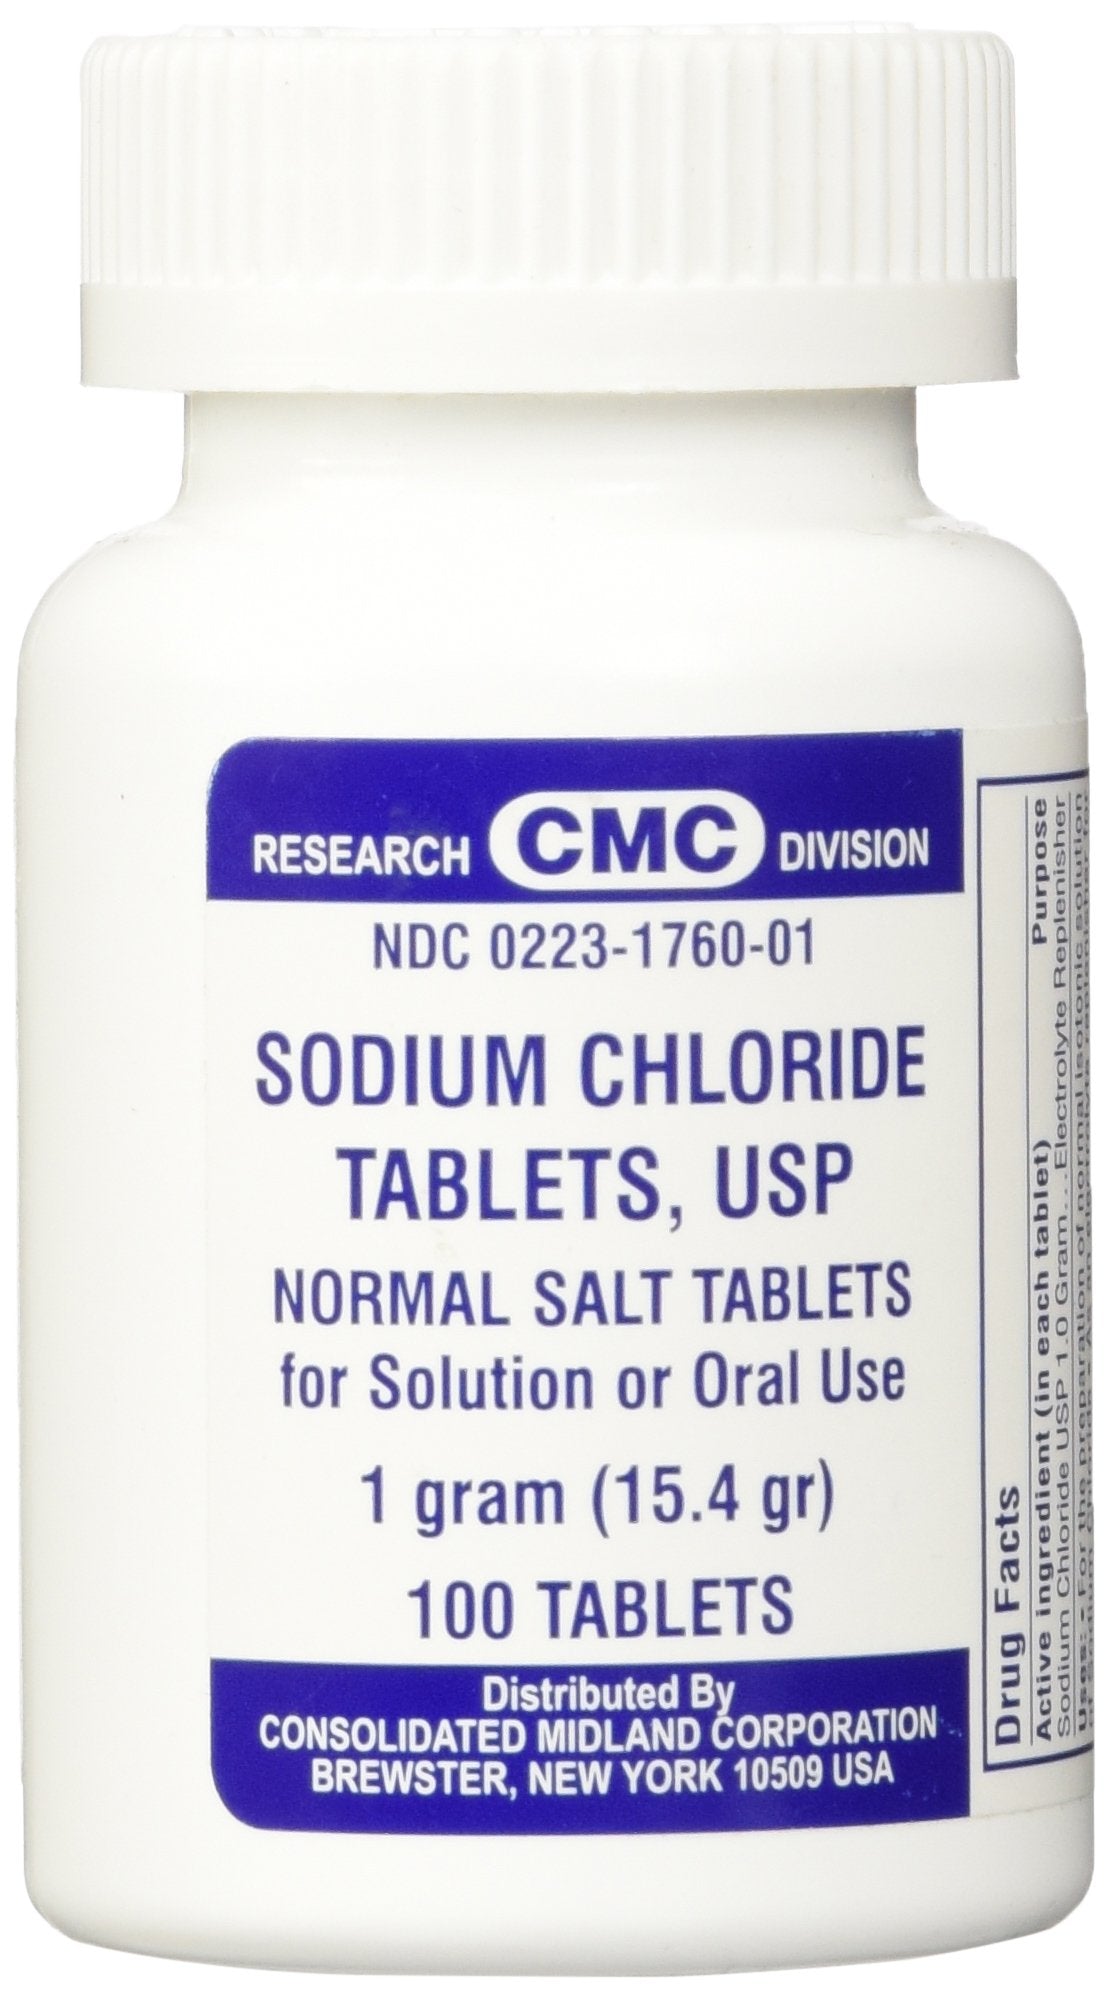 Sodium Chloride Tablets 1 Gm, USP Normal Salt Tablets - 100 Tablets